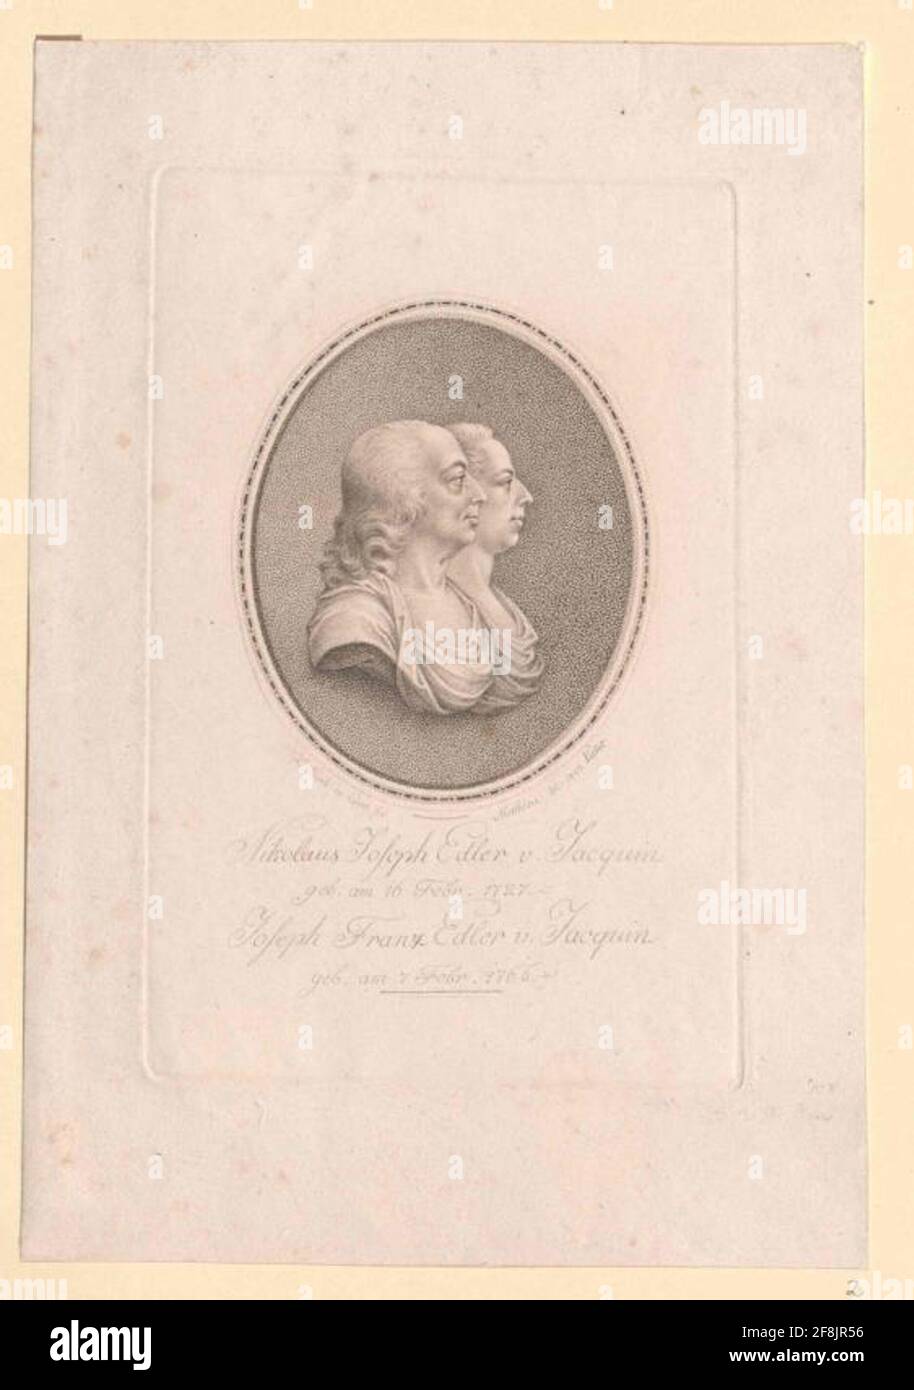 Jacquin, Nikolaus Joseph Freiherr von Erchier: Mathieu ,? Factual genesis: Vienna Stock Photo